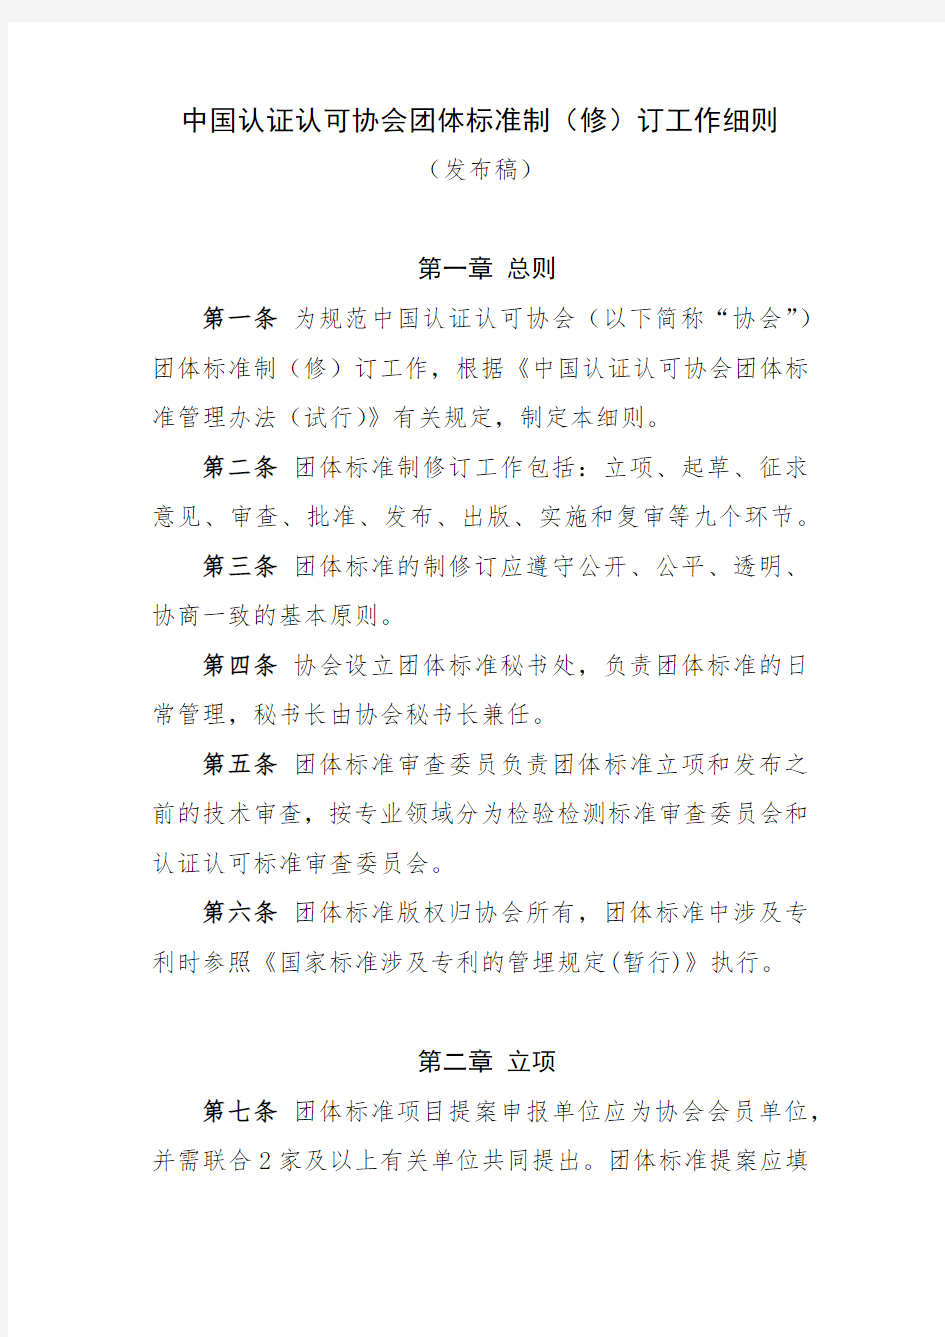 中国认证认可协会团体标准制修订工作细则